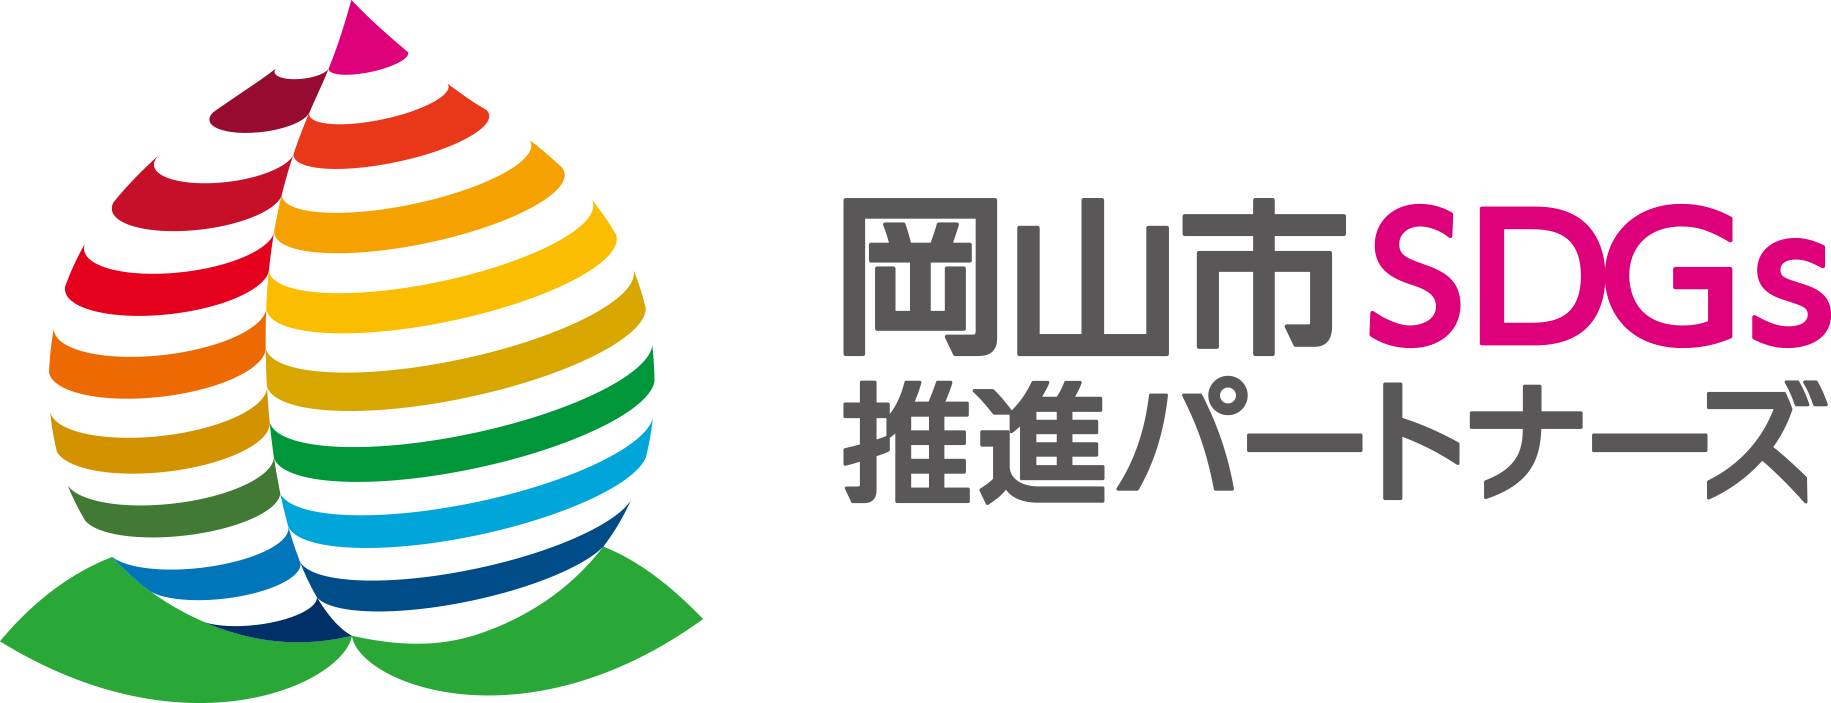 岡山市SDGs推進パートナーズのロゴマーク